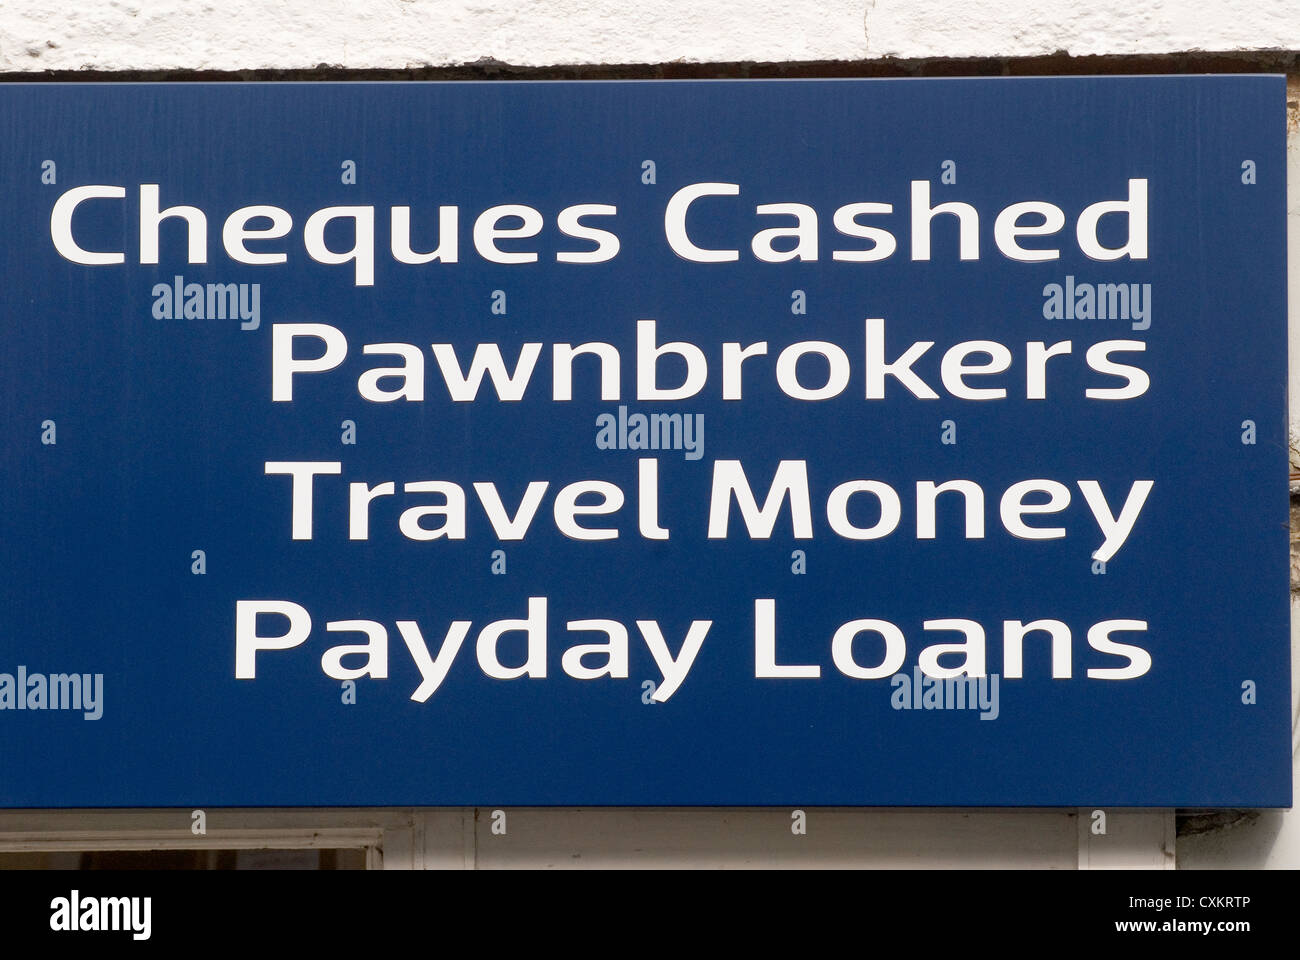 Prêts sur salaire, chèques de prêteurs sur gage encaissés, argent de voyage, High Street Sign . Staines Middlesex Royaume-Uni 2012 2010 HOMER SYKES Banque D'Images